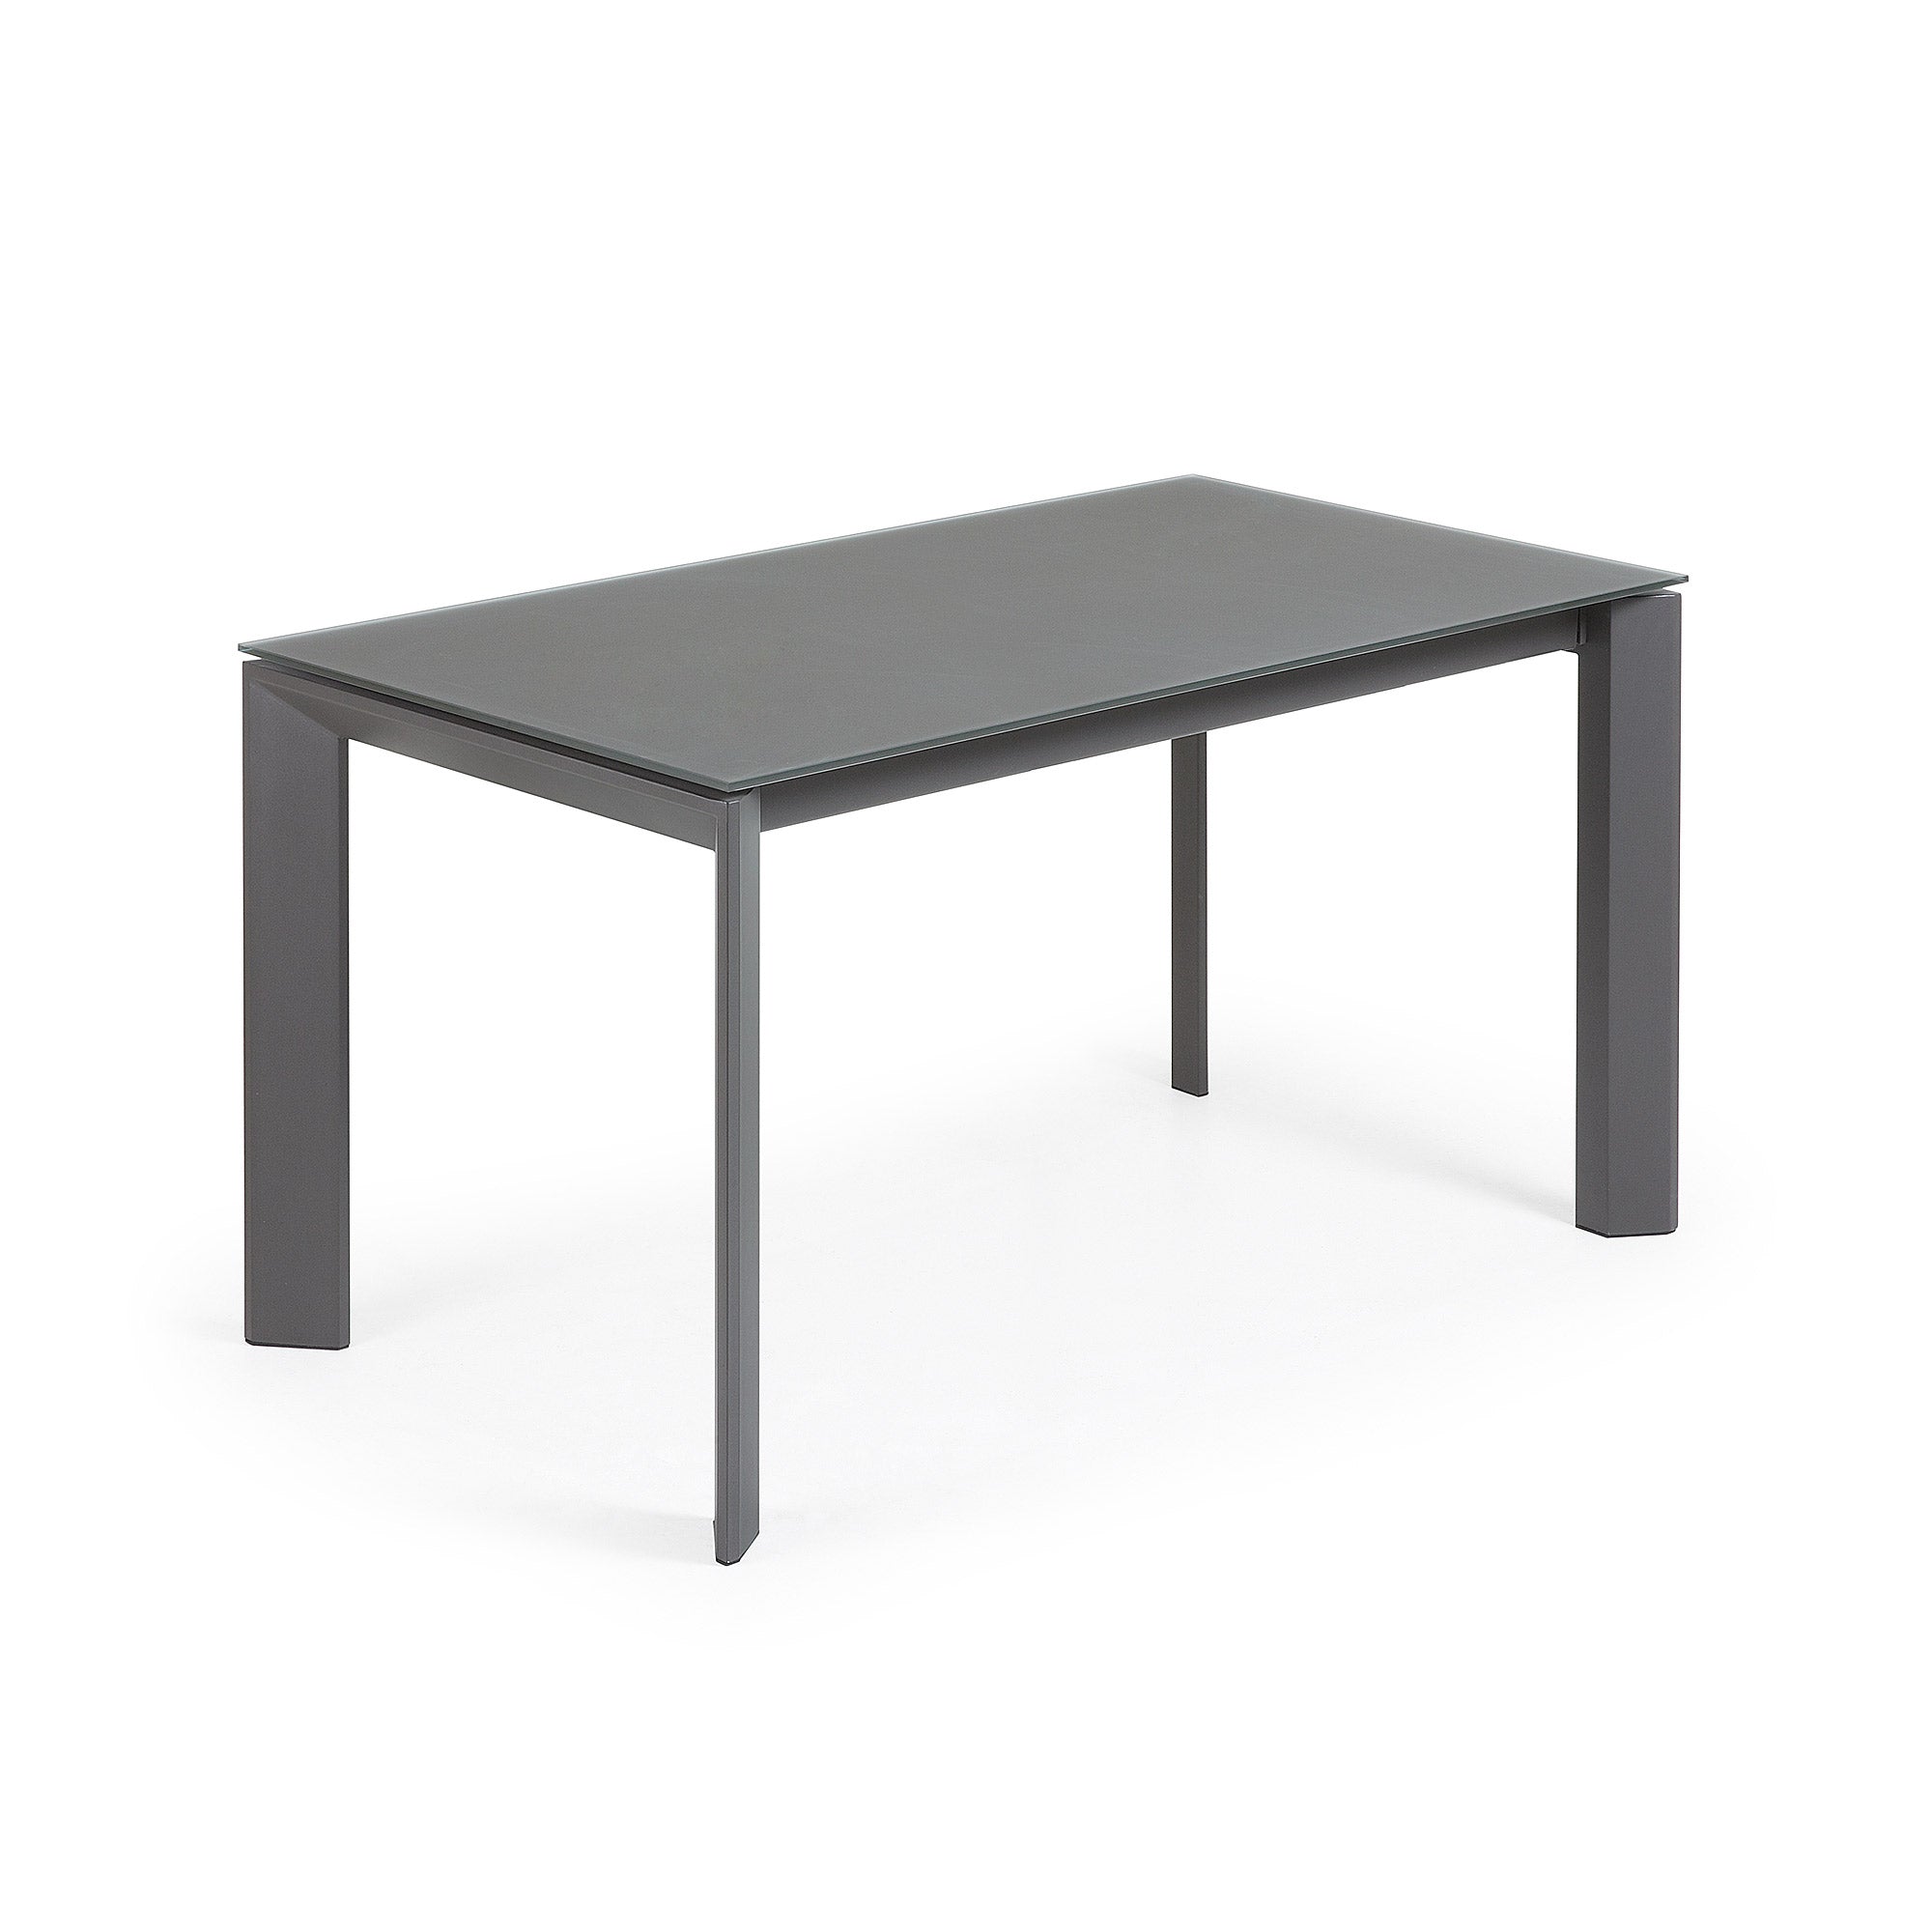 Axis kihúzható asztal szürke üvegből, sötétszürke acél lábakkal, 140 (200) cm